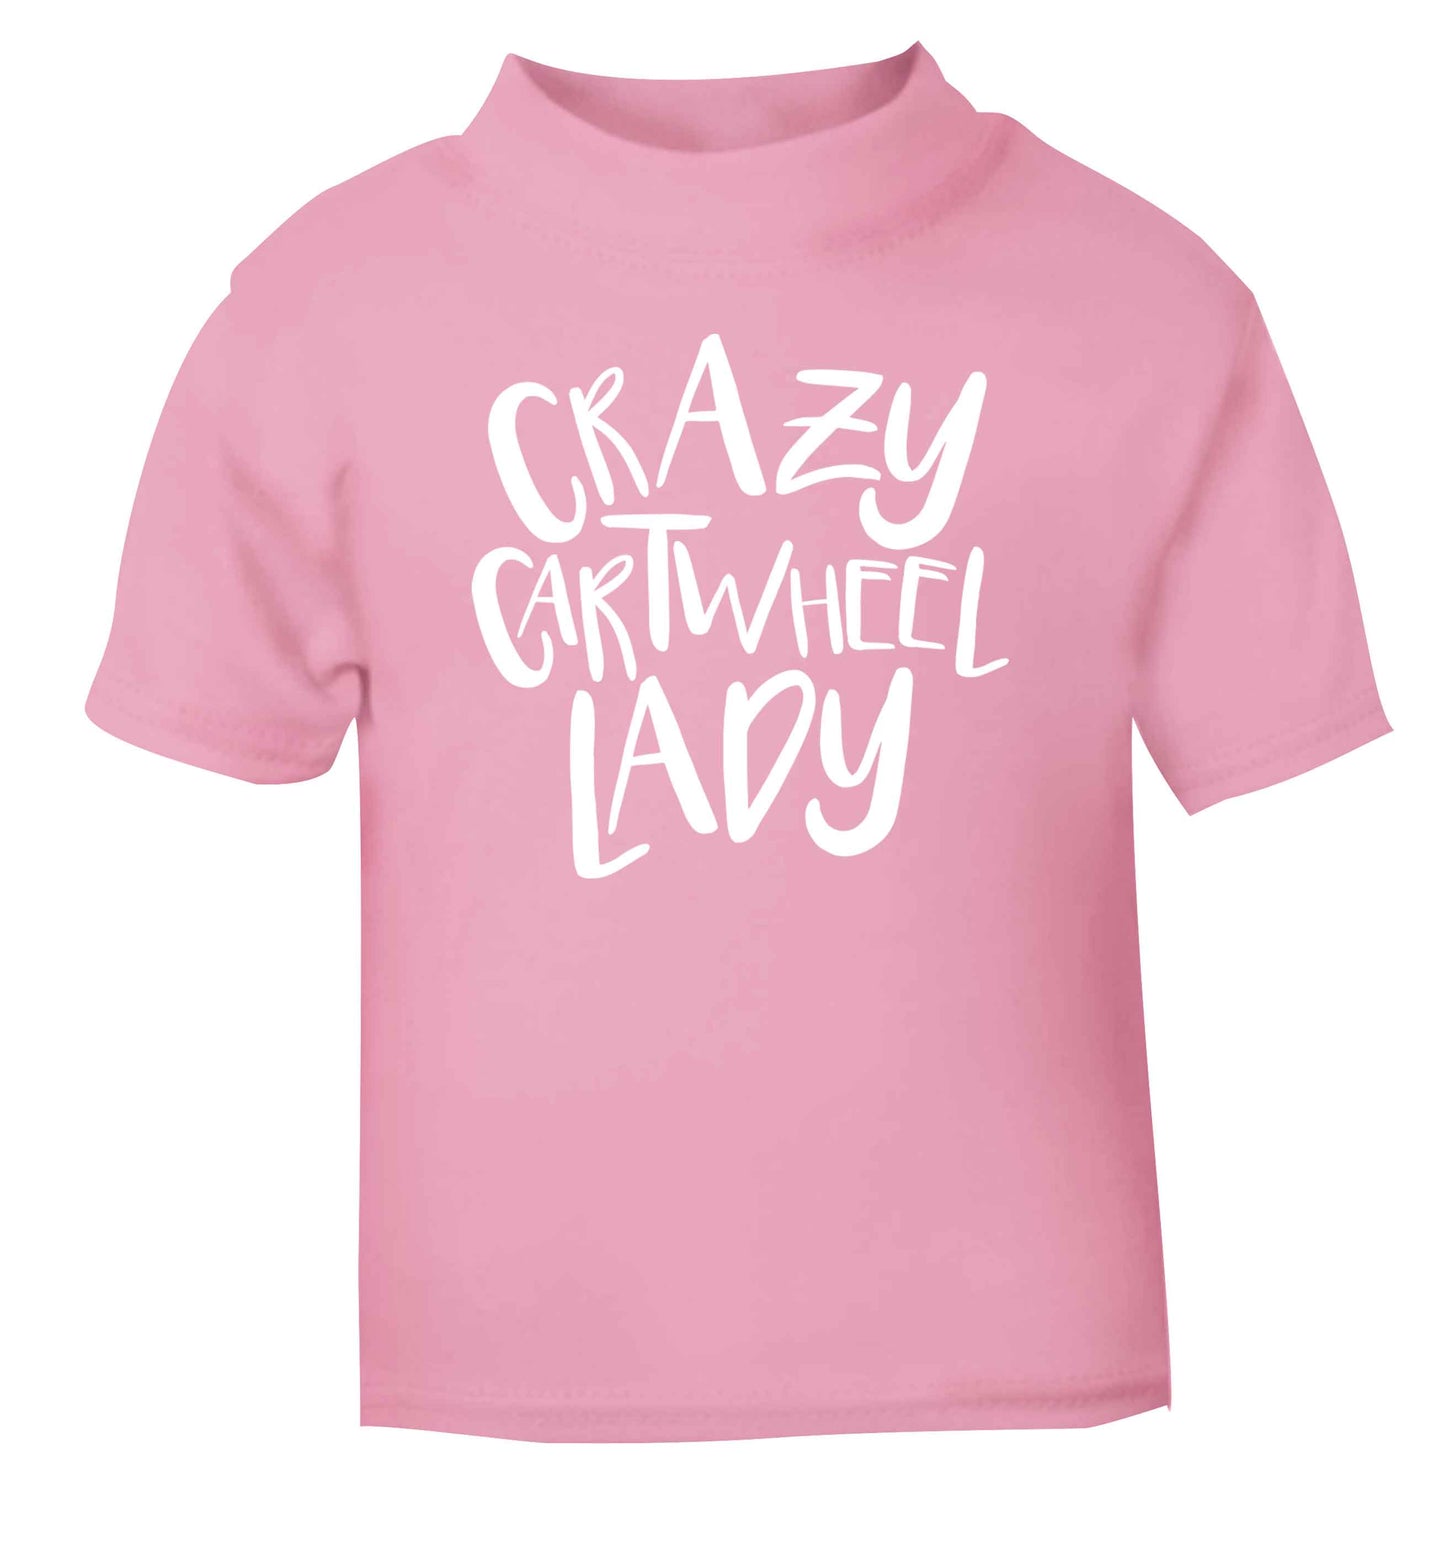 Crazy cartwheel lady light pink Baby Toddler Tshirt 2 Years